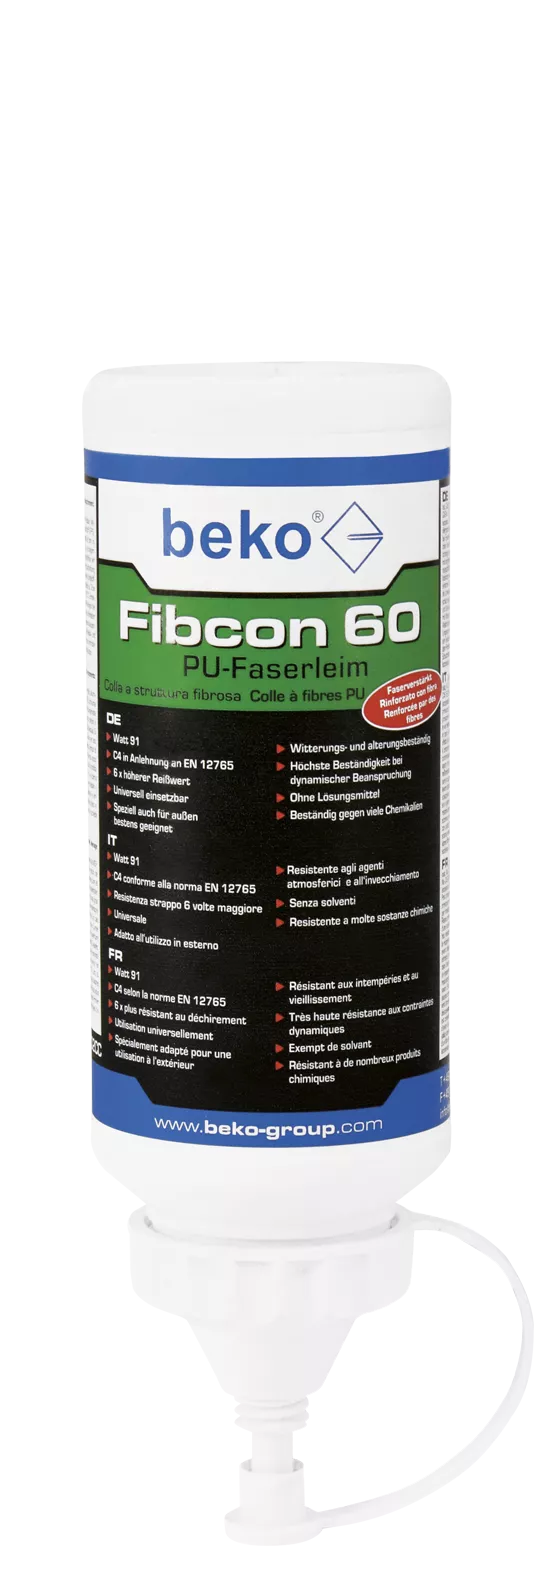 beko Fibcon 60 PU-Faserleim